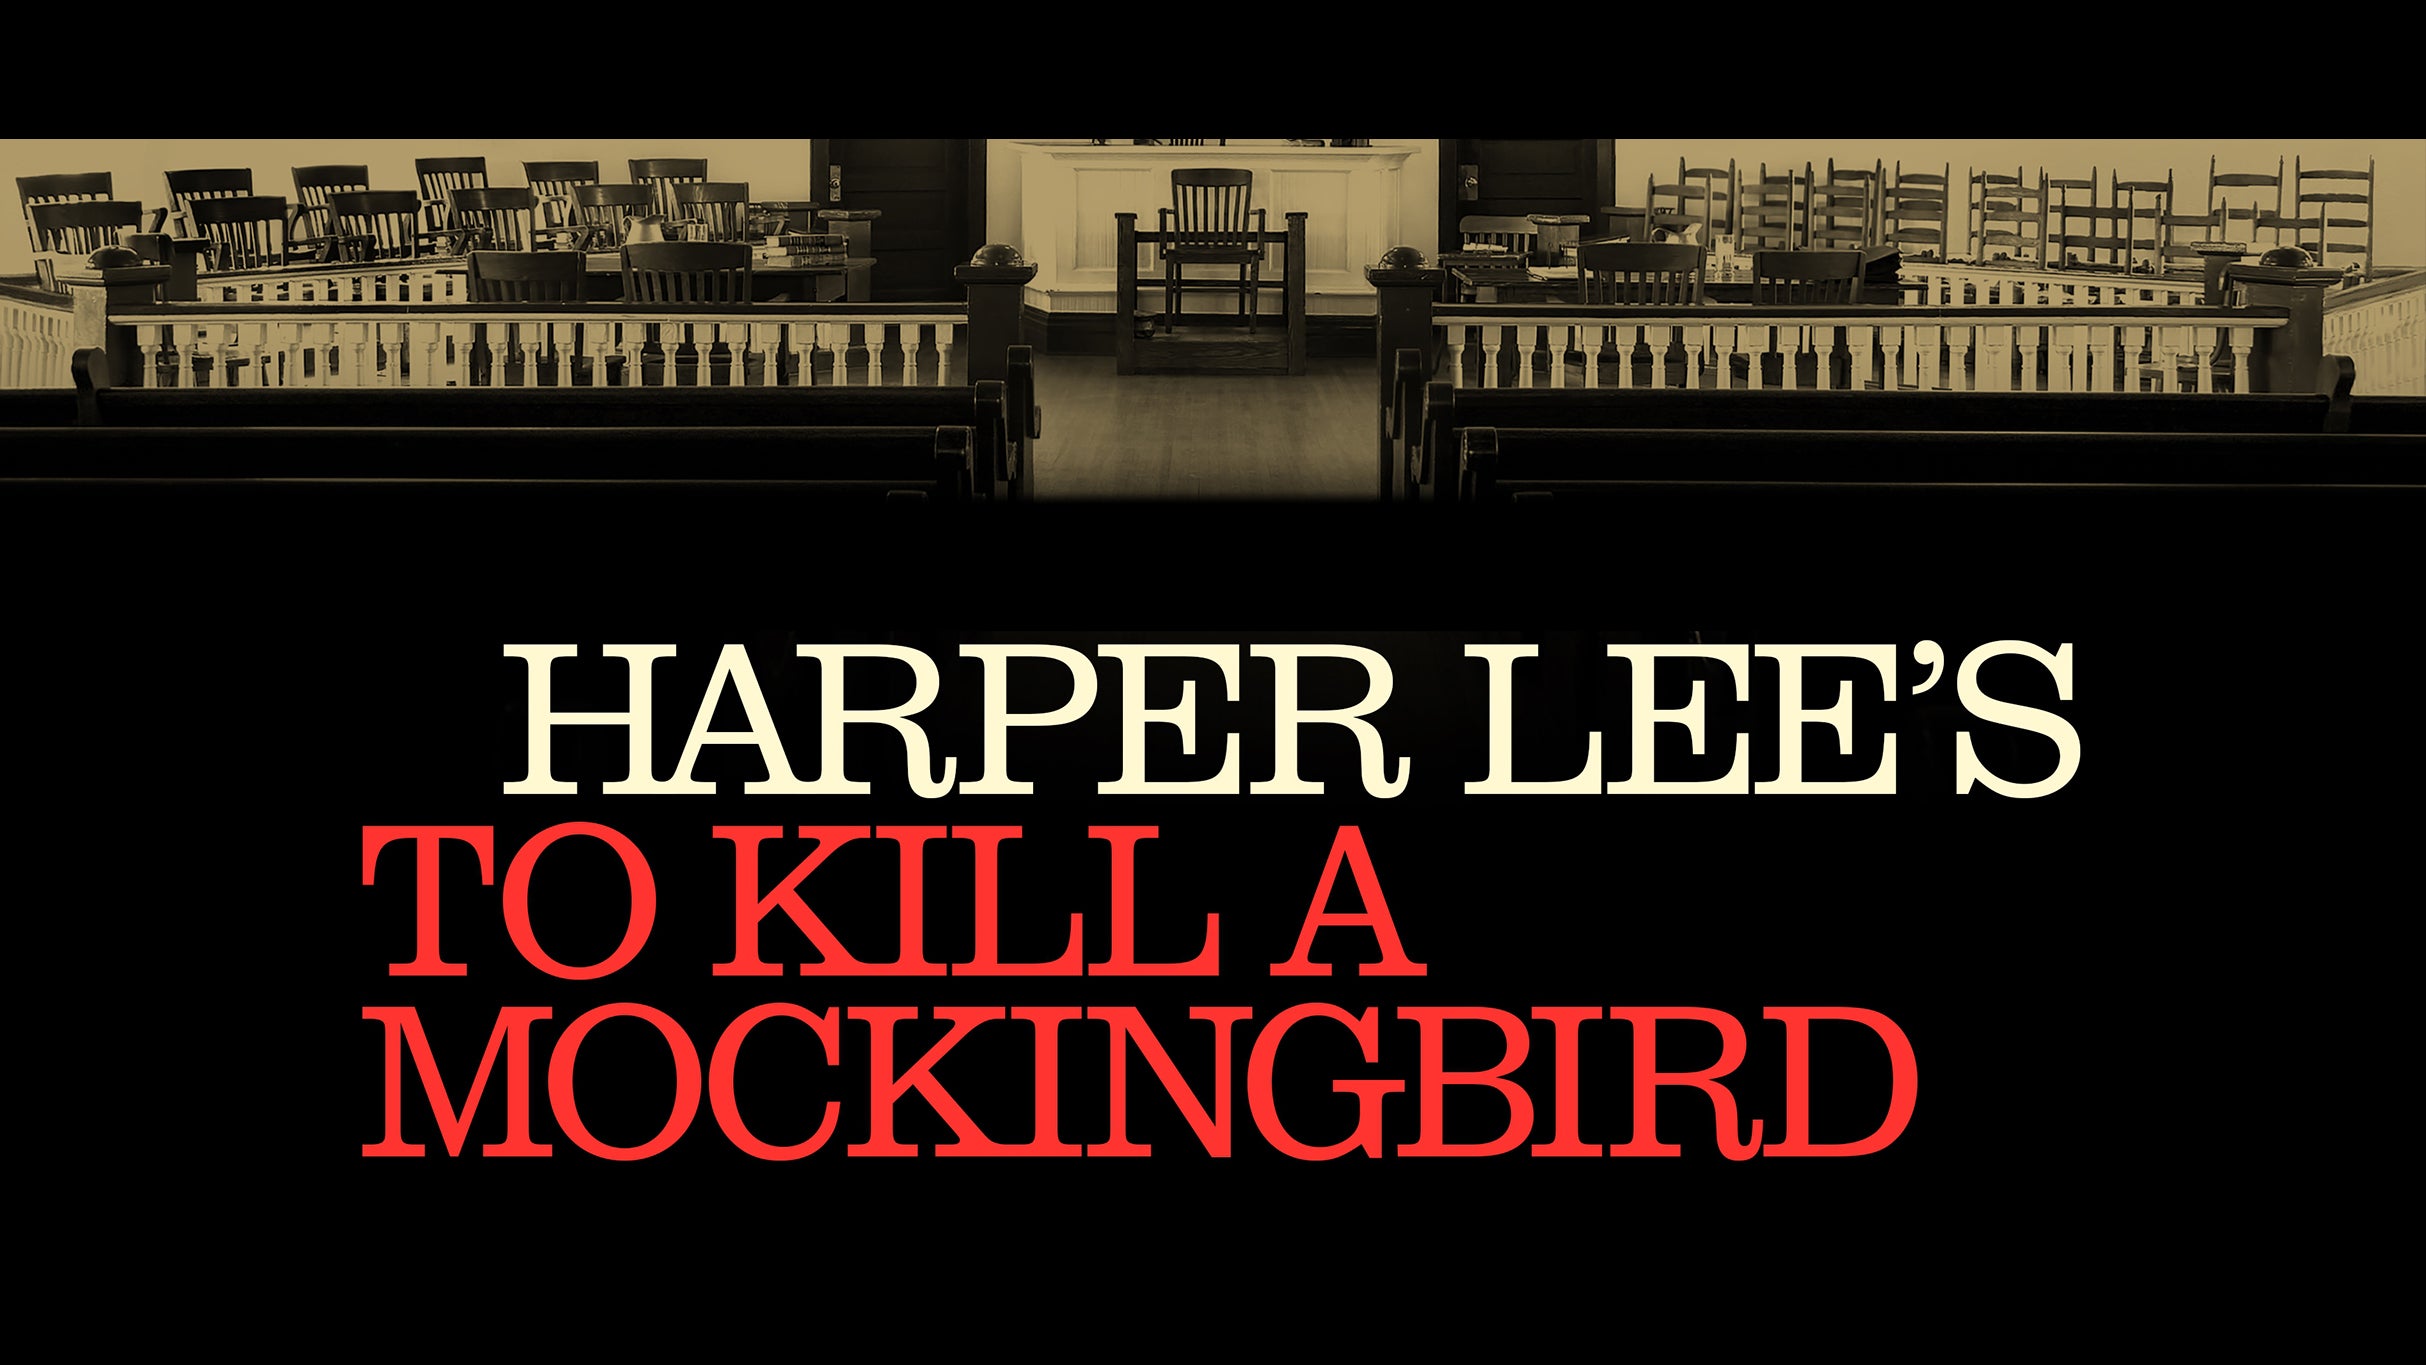 To Kill a Mockingbird (Touring) at Fox Theatre - Atlanta